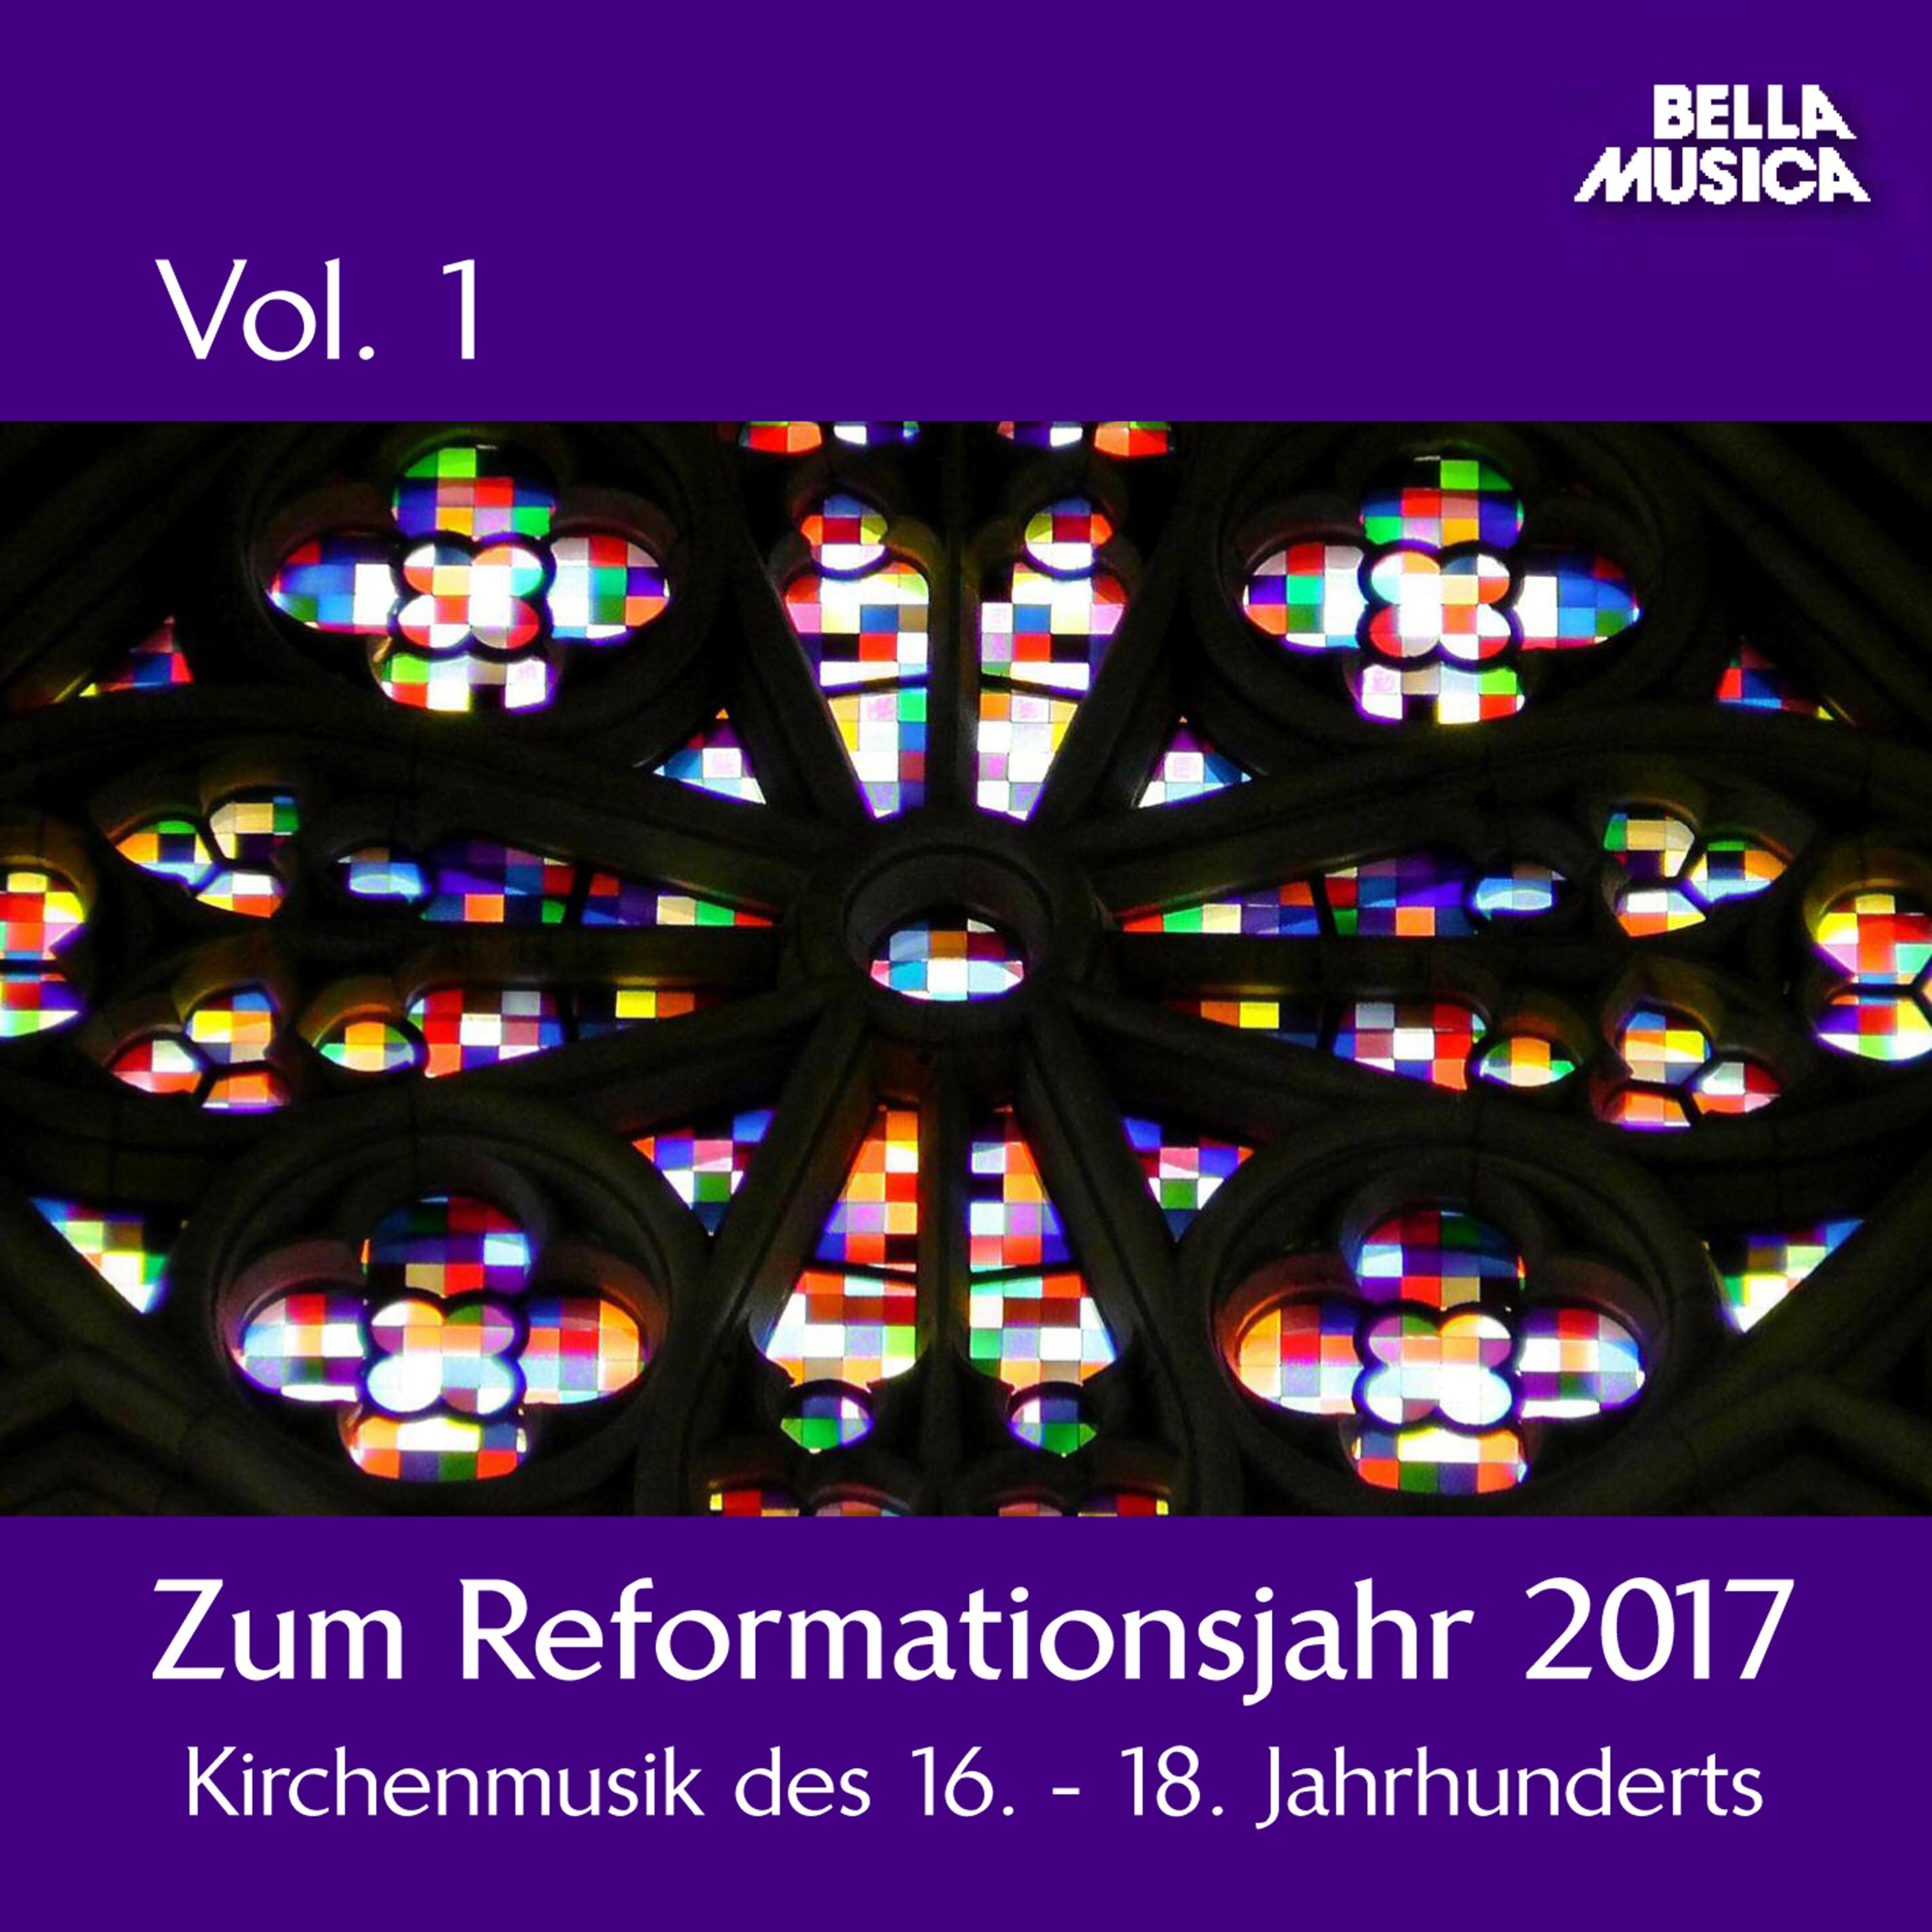 Zum Reformationsjahr 2017: Kirchenmusik des 16. - 18. Jahrhunderts, Vol. 1